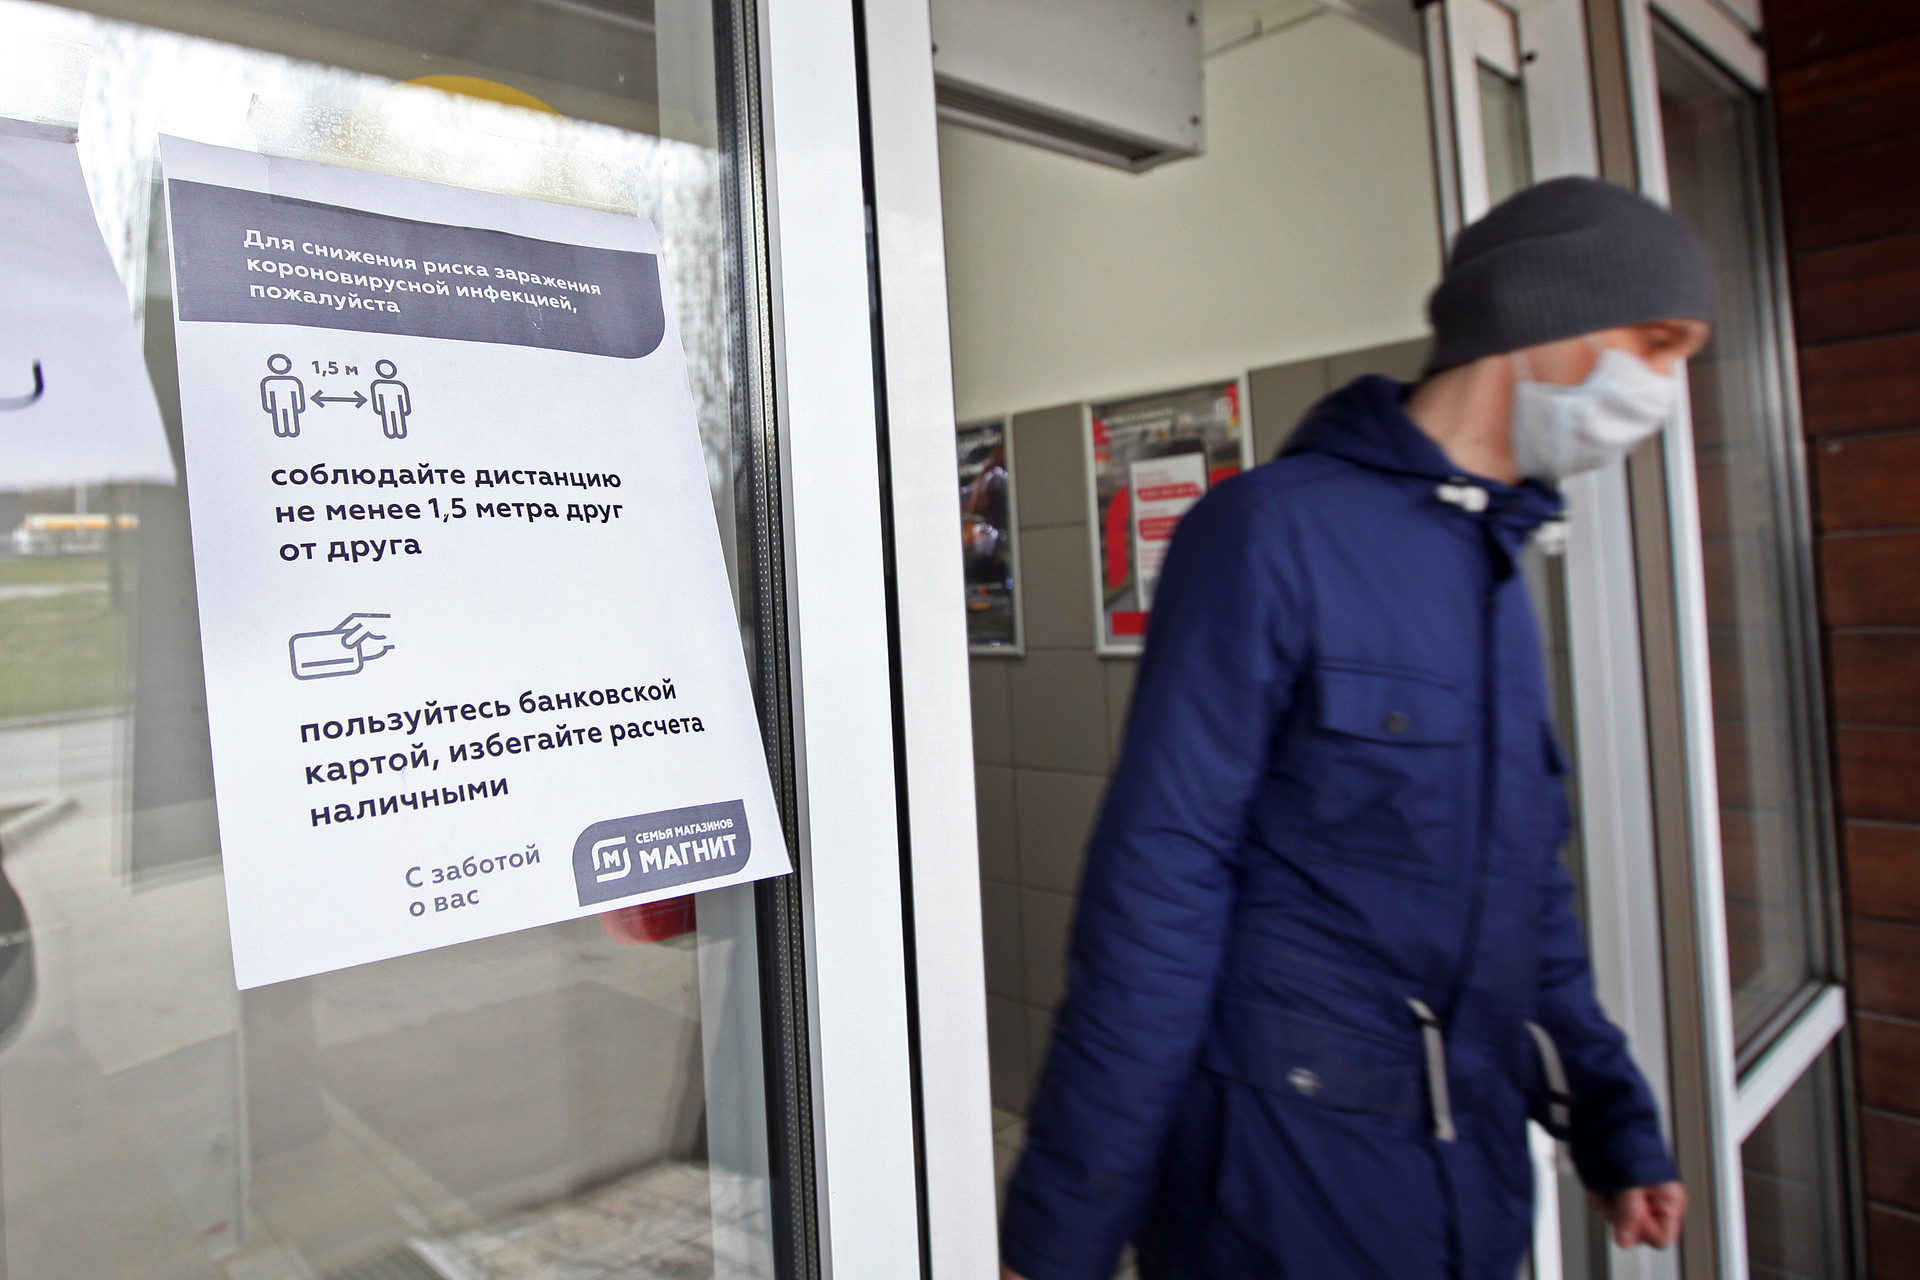 Pengumuman untuk menjaga jarak dan pembayaran menggunakan kartu ditempel di sebuah toko di Moskow, Senin (30/3)